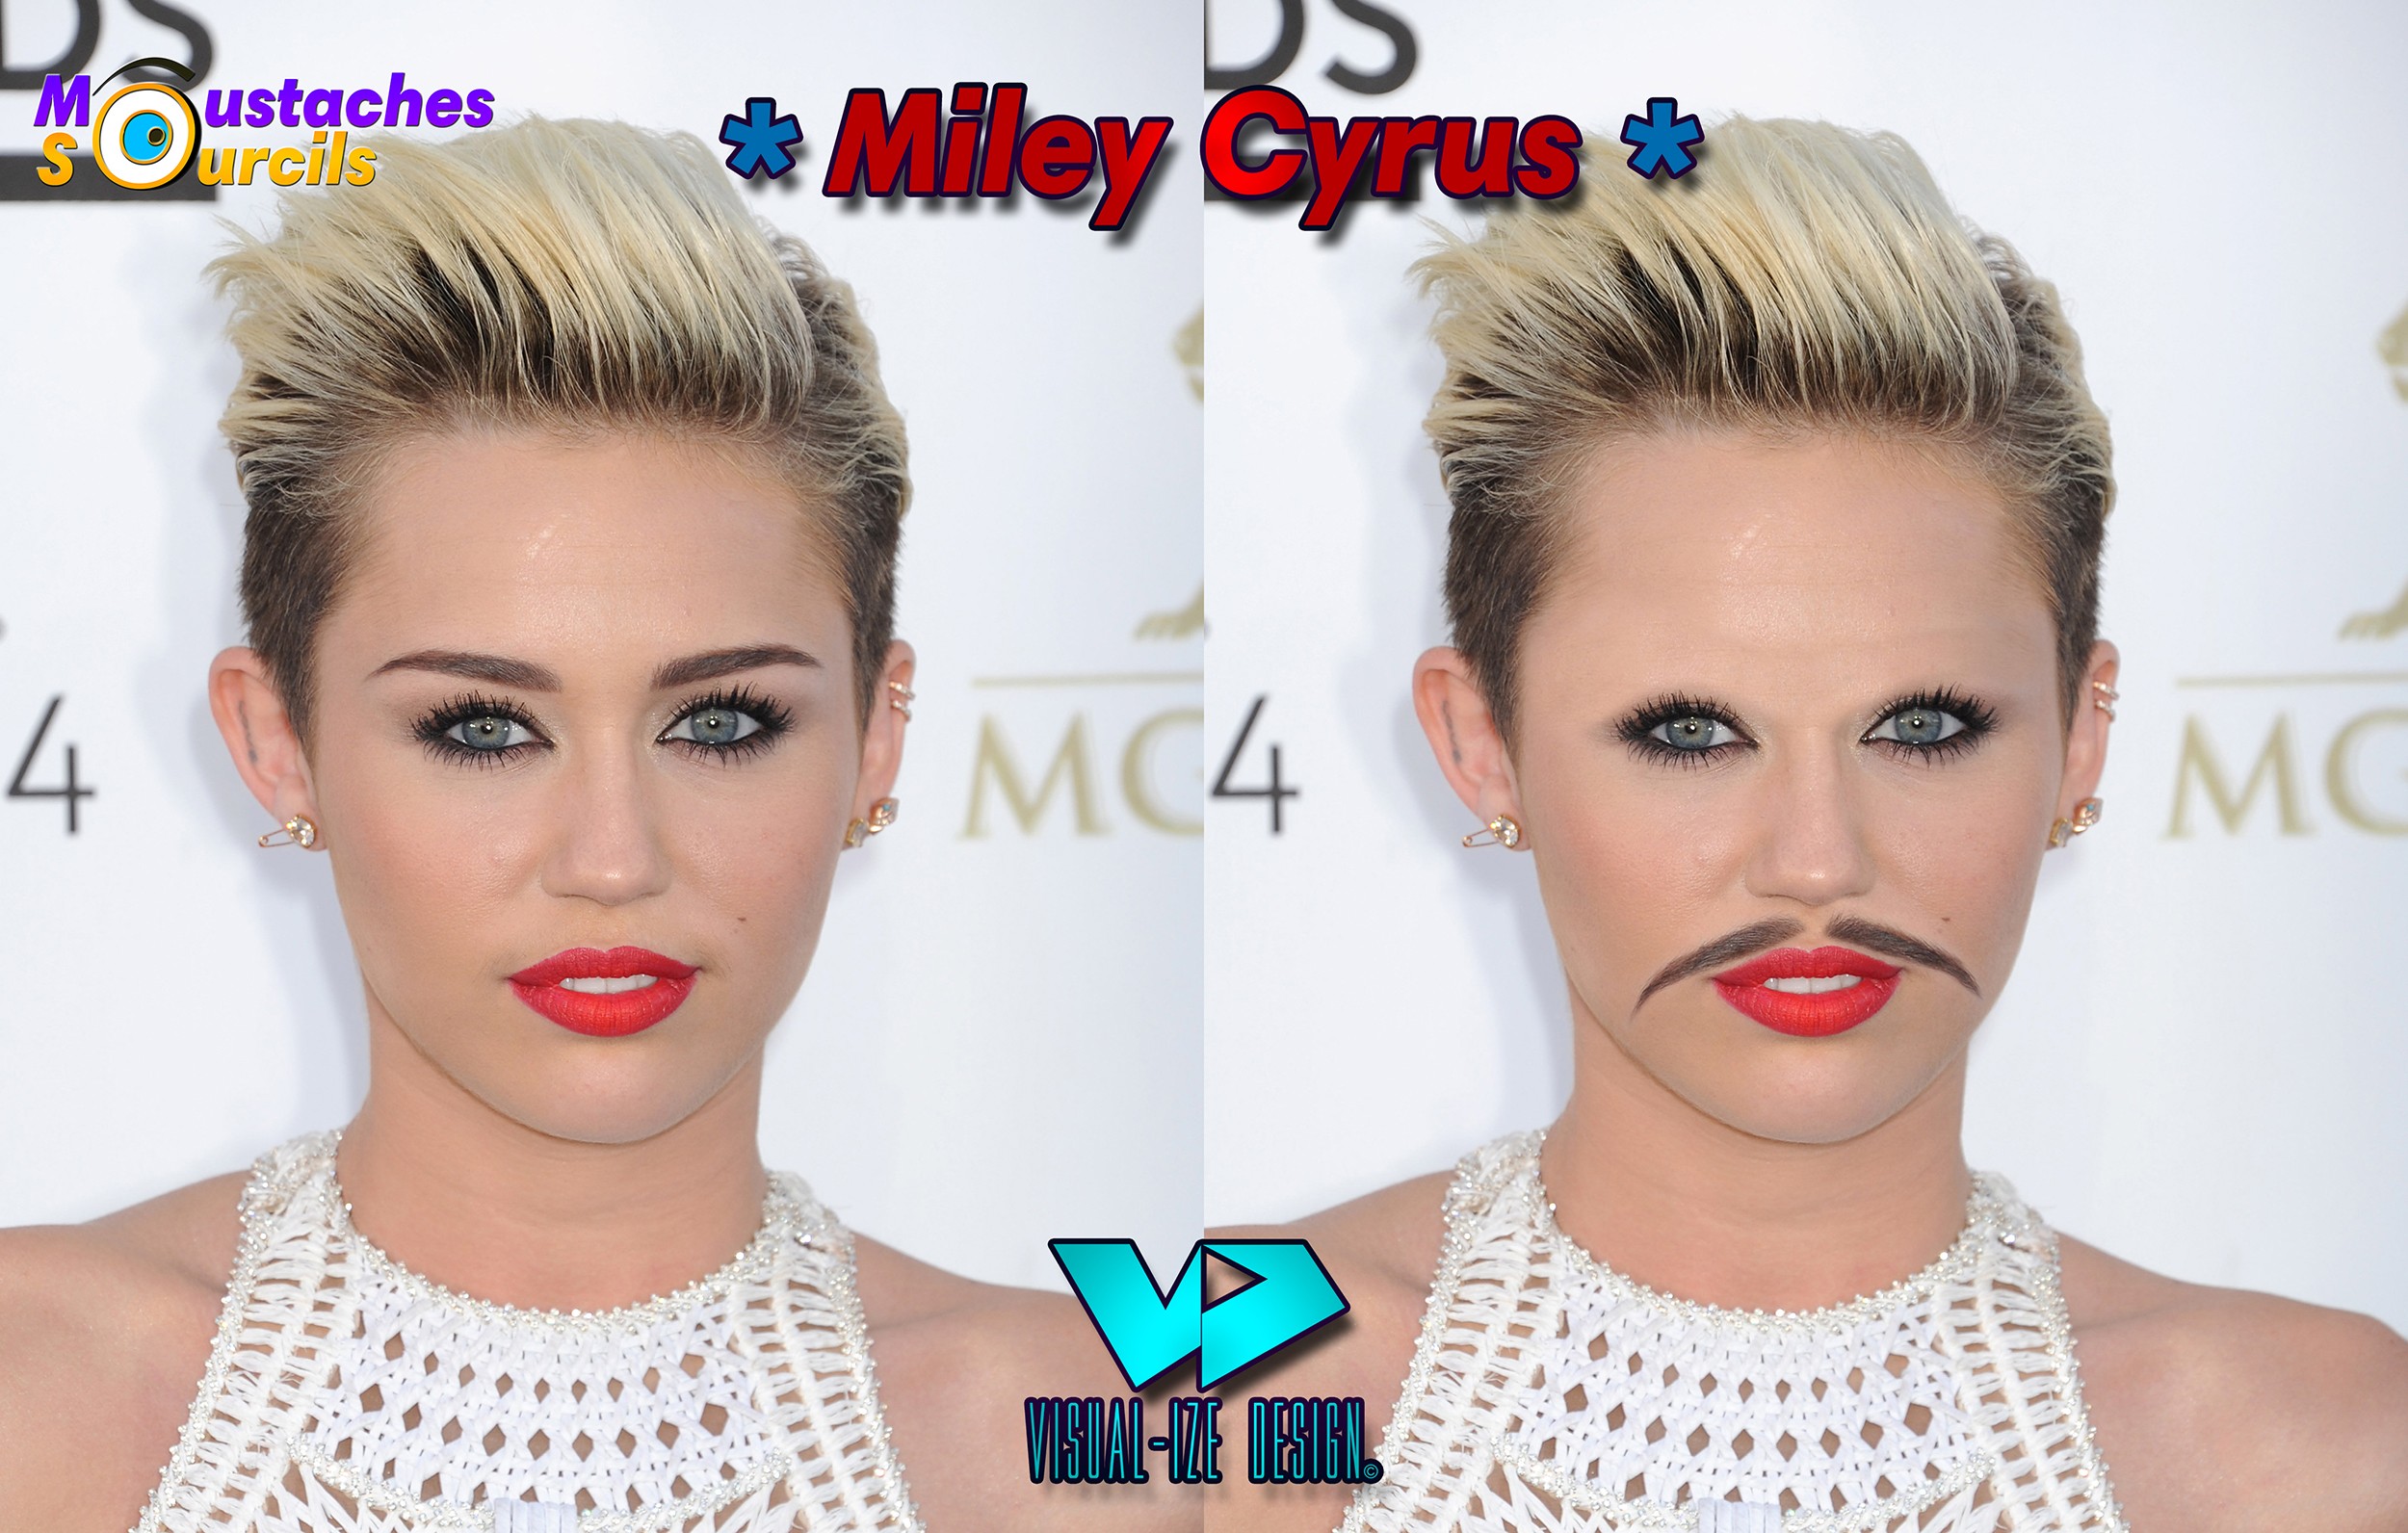  Image originale  Moustaches Sourcils Miley Cyrus 
              